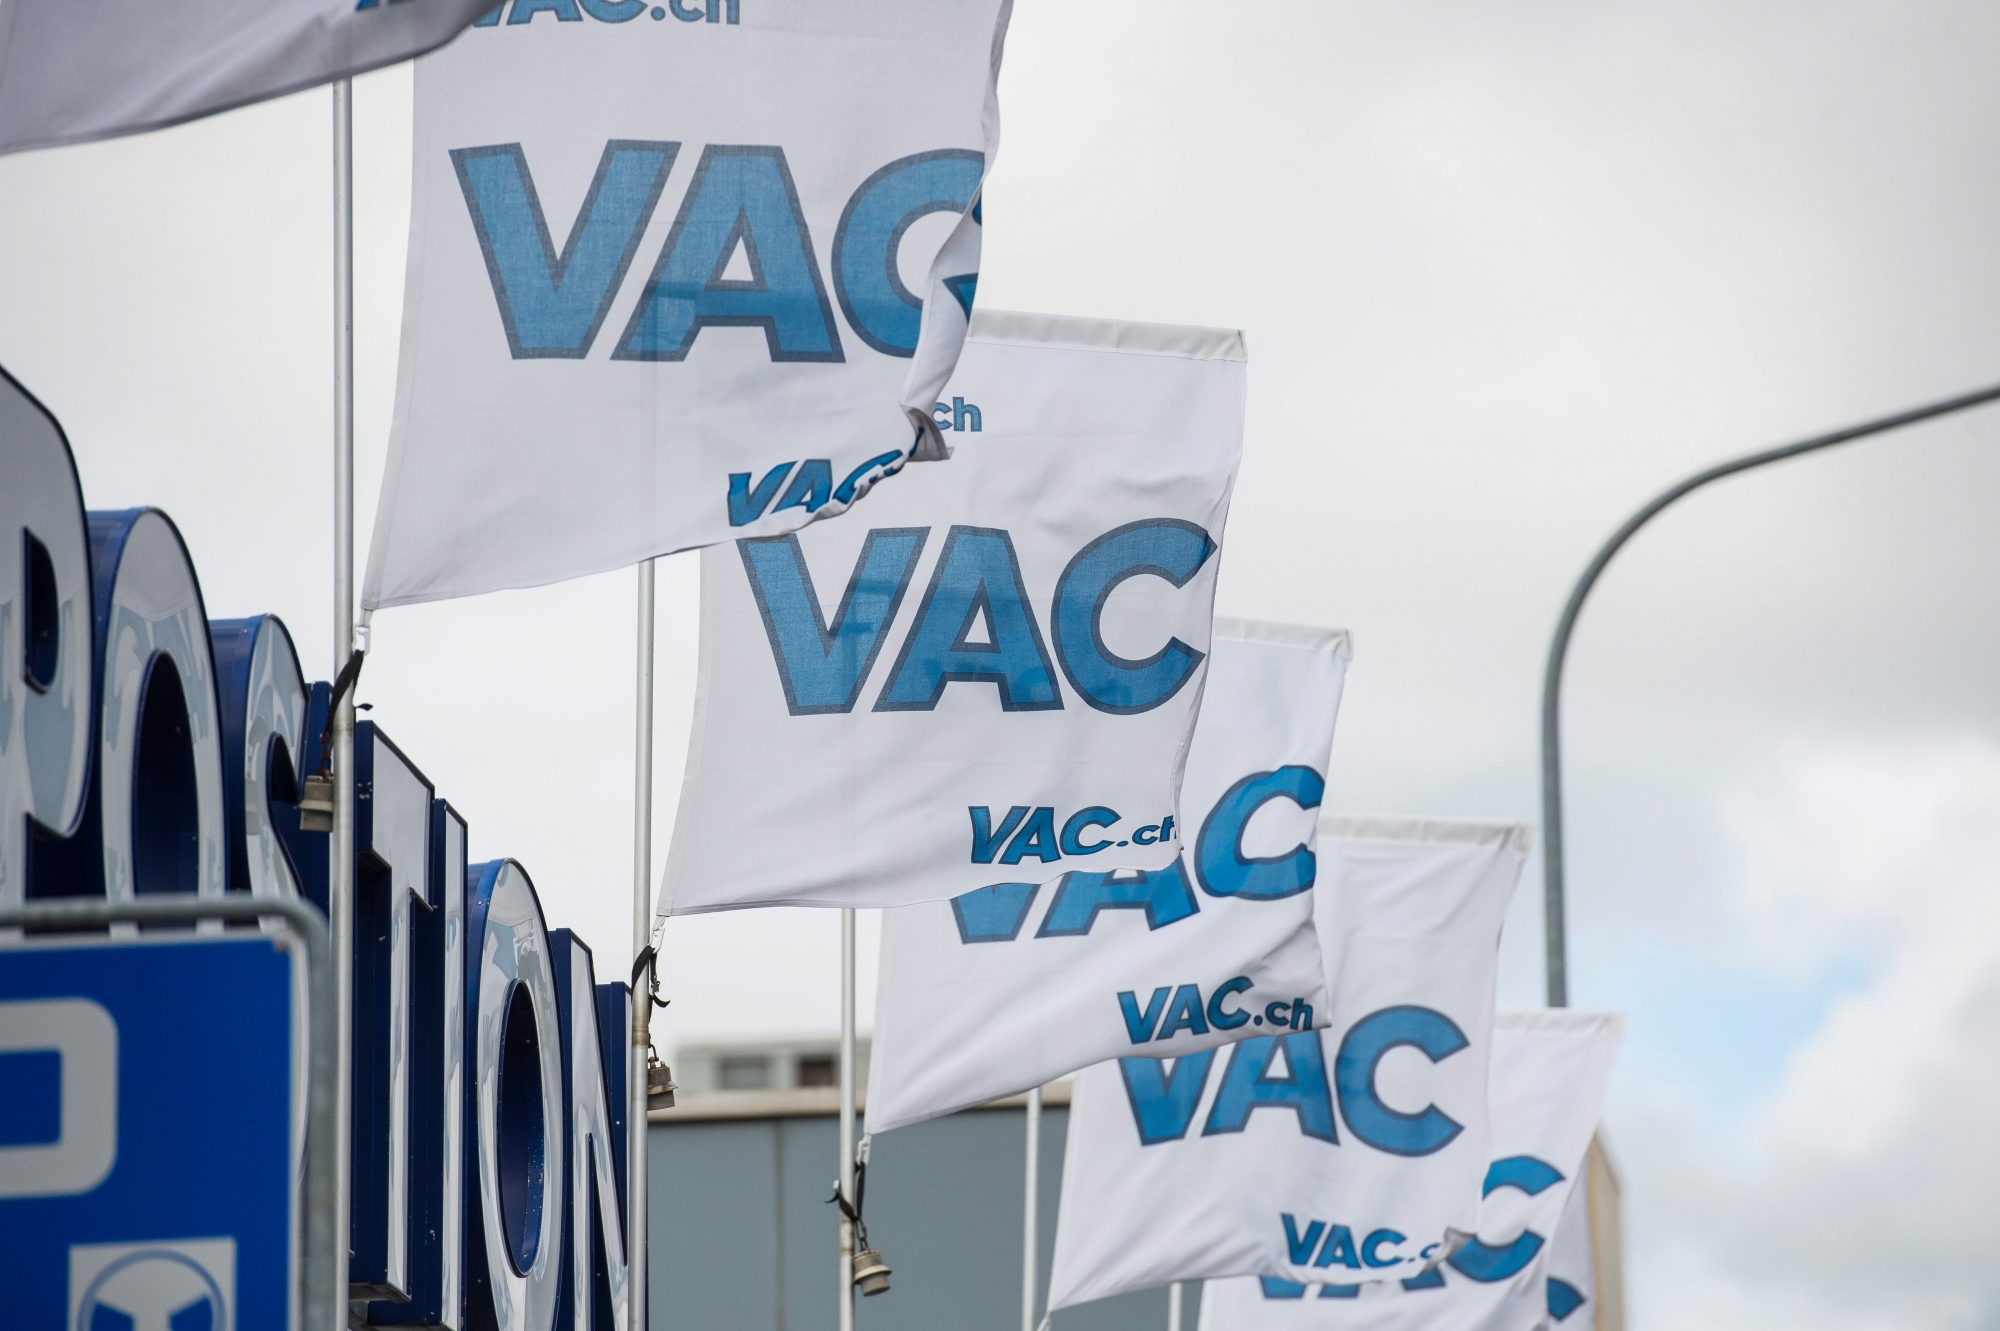 La societe VAC, un magasin de vente directe et par correspondance, installee ala rue des Cretets 130

La Chaux-de-Fonds, le 13 juillet 2016
Photo: Lucas Vuitel VENTE PAR CORRESPONDANCE